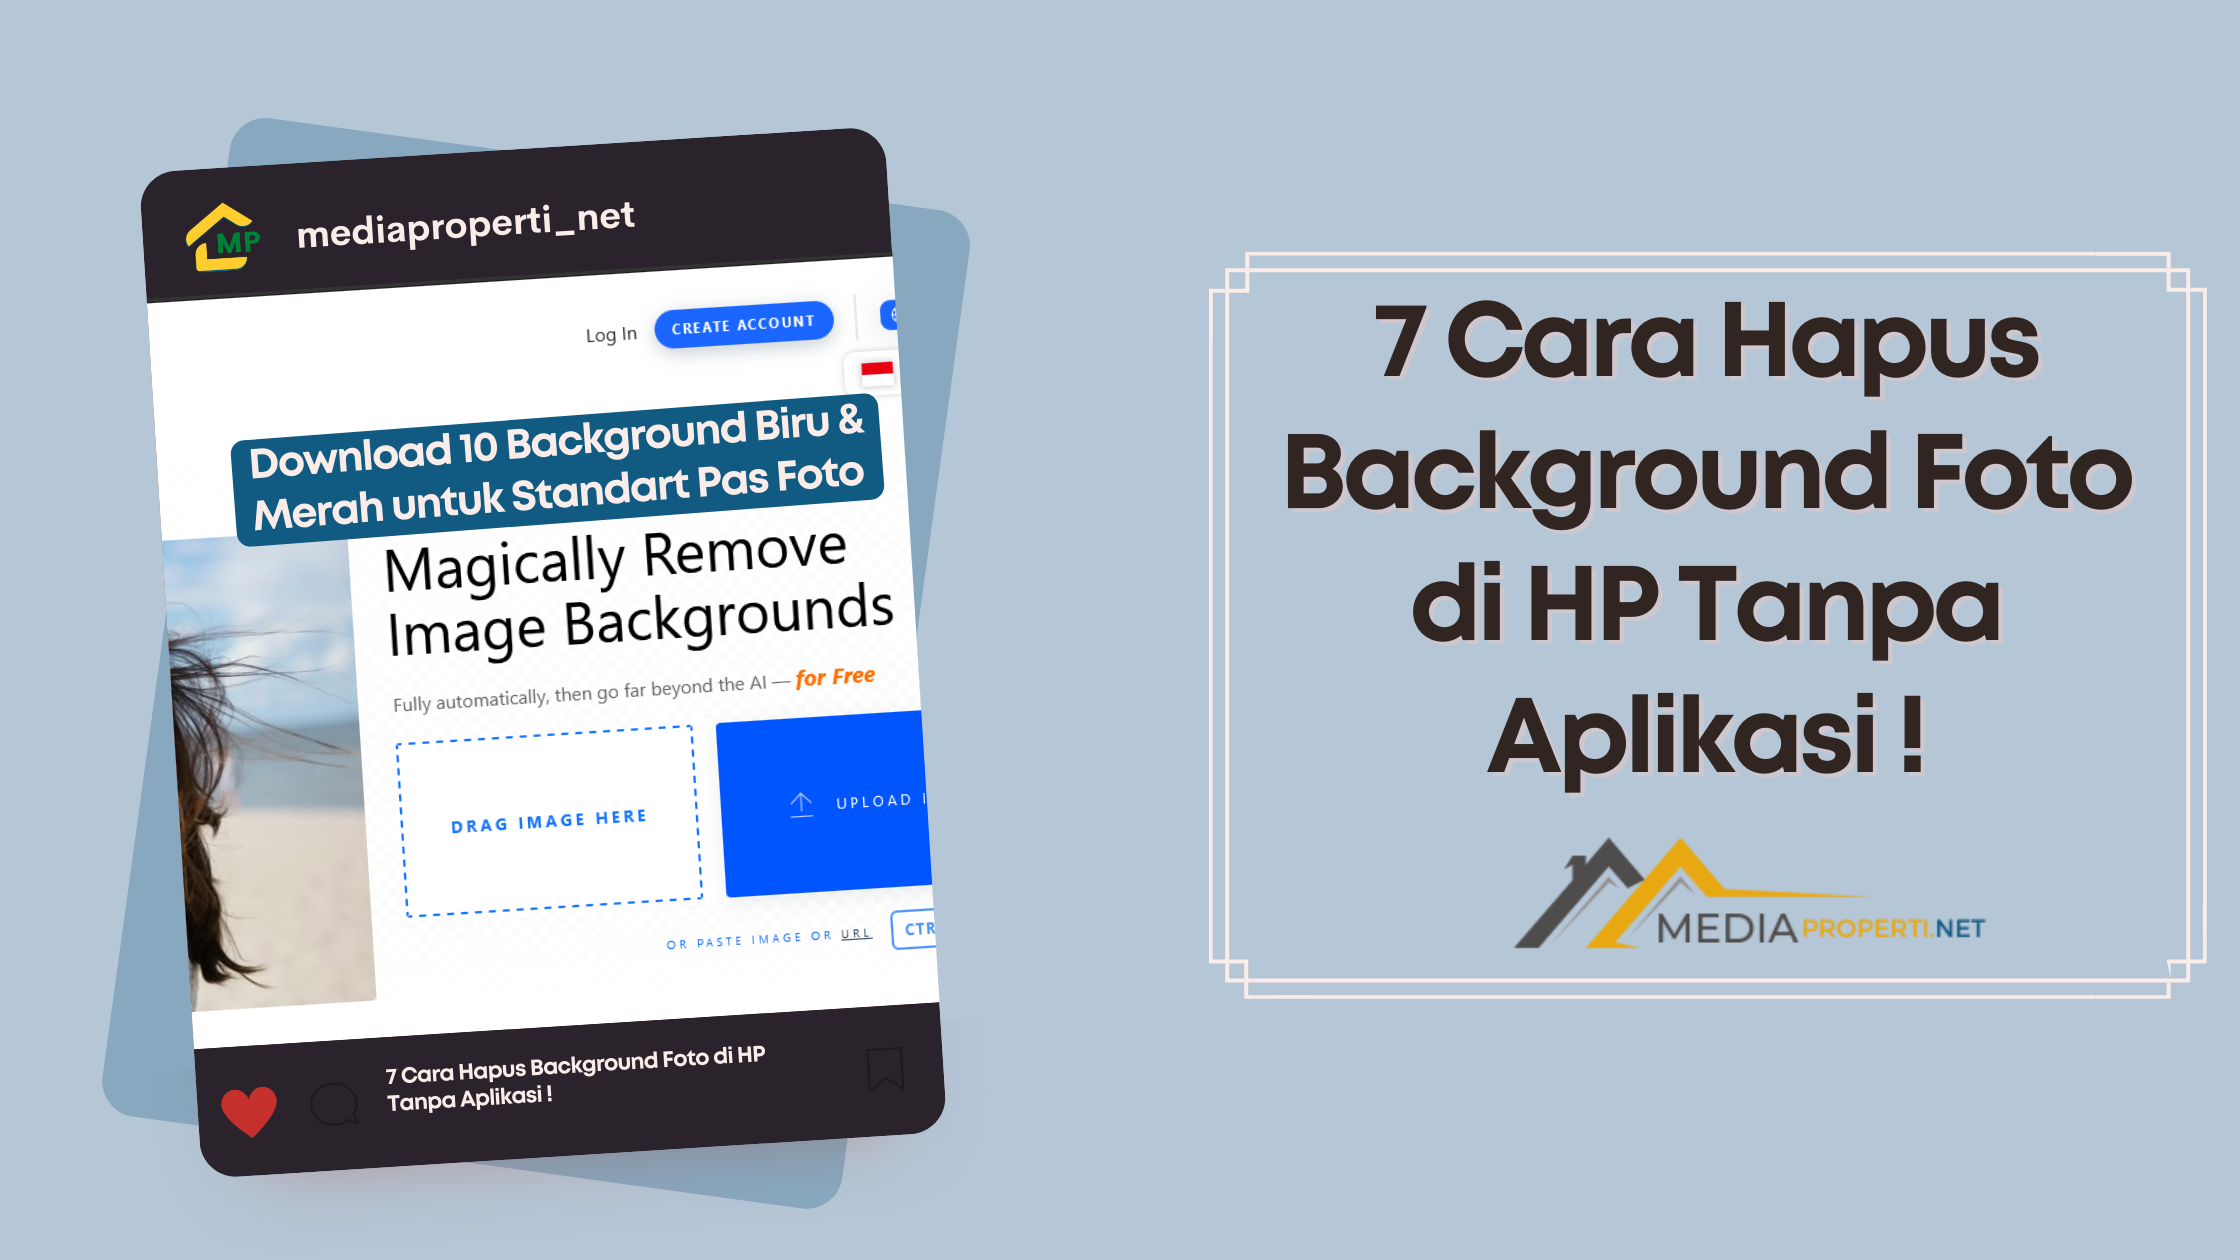 7 Cara Hapus Background Foto di HP Tanpa Aplikasi !